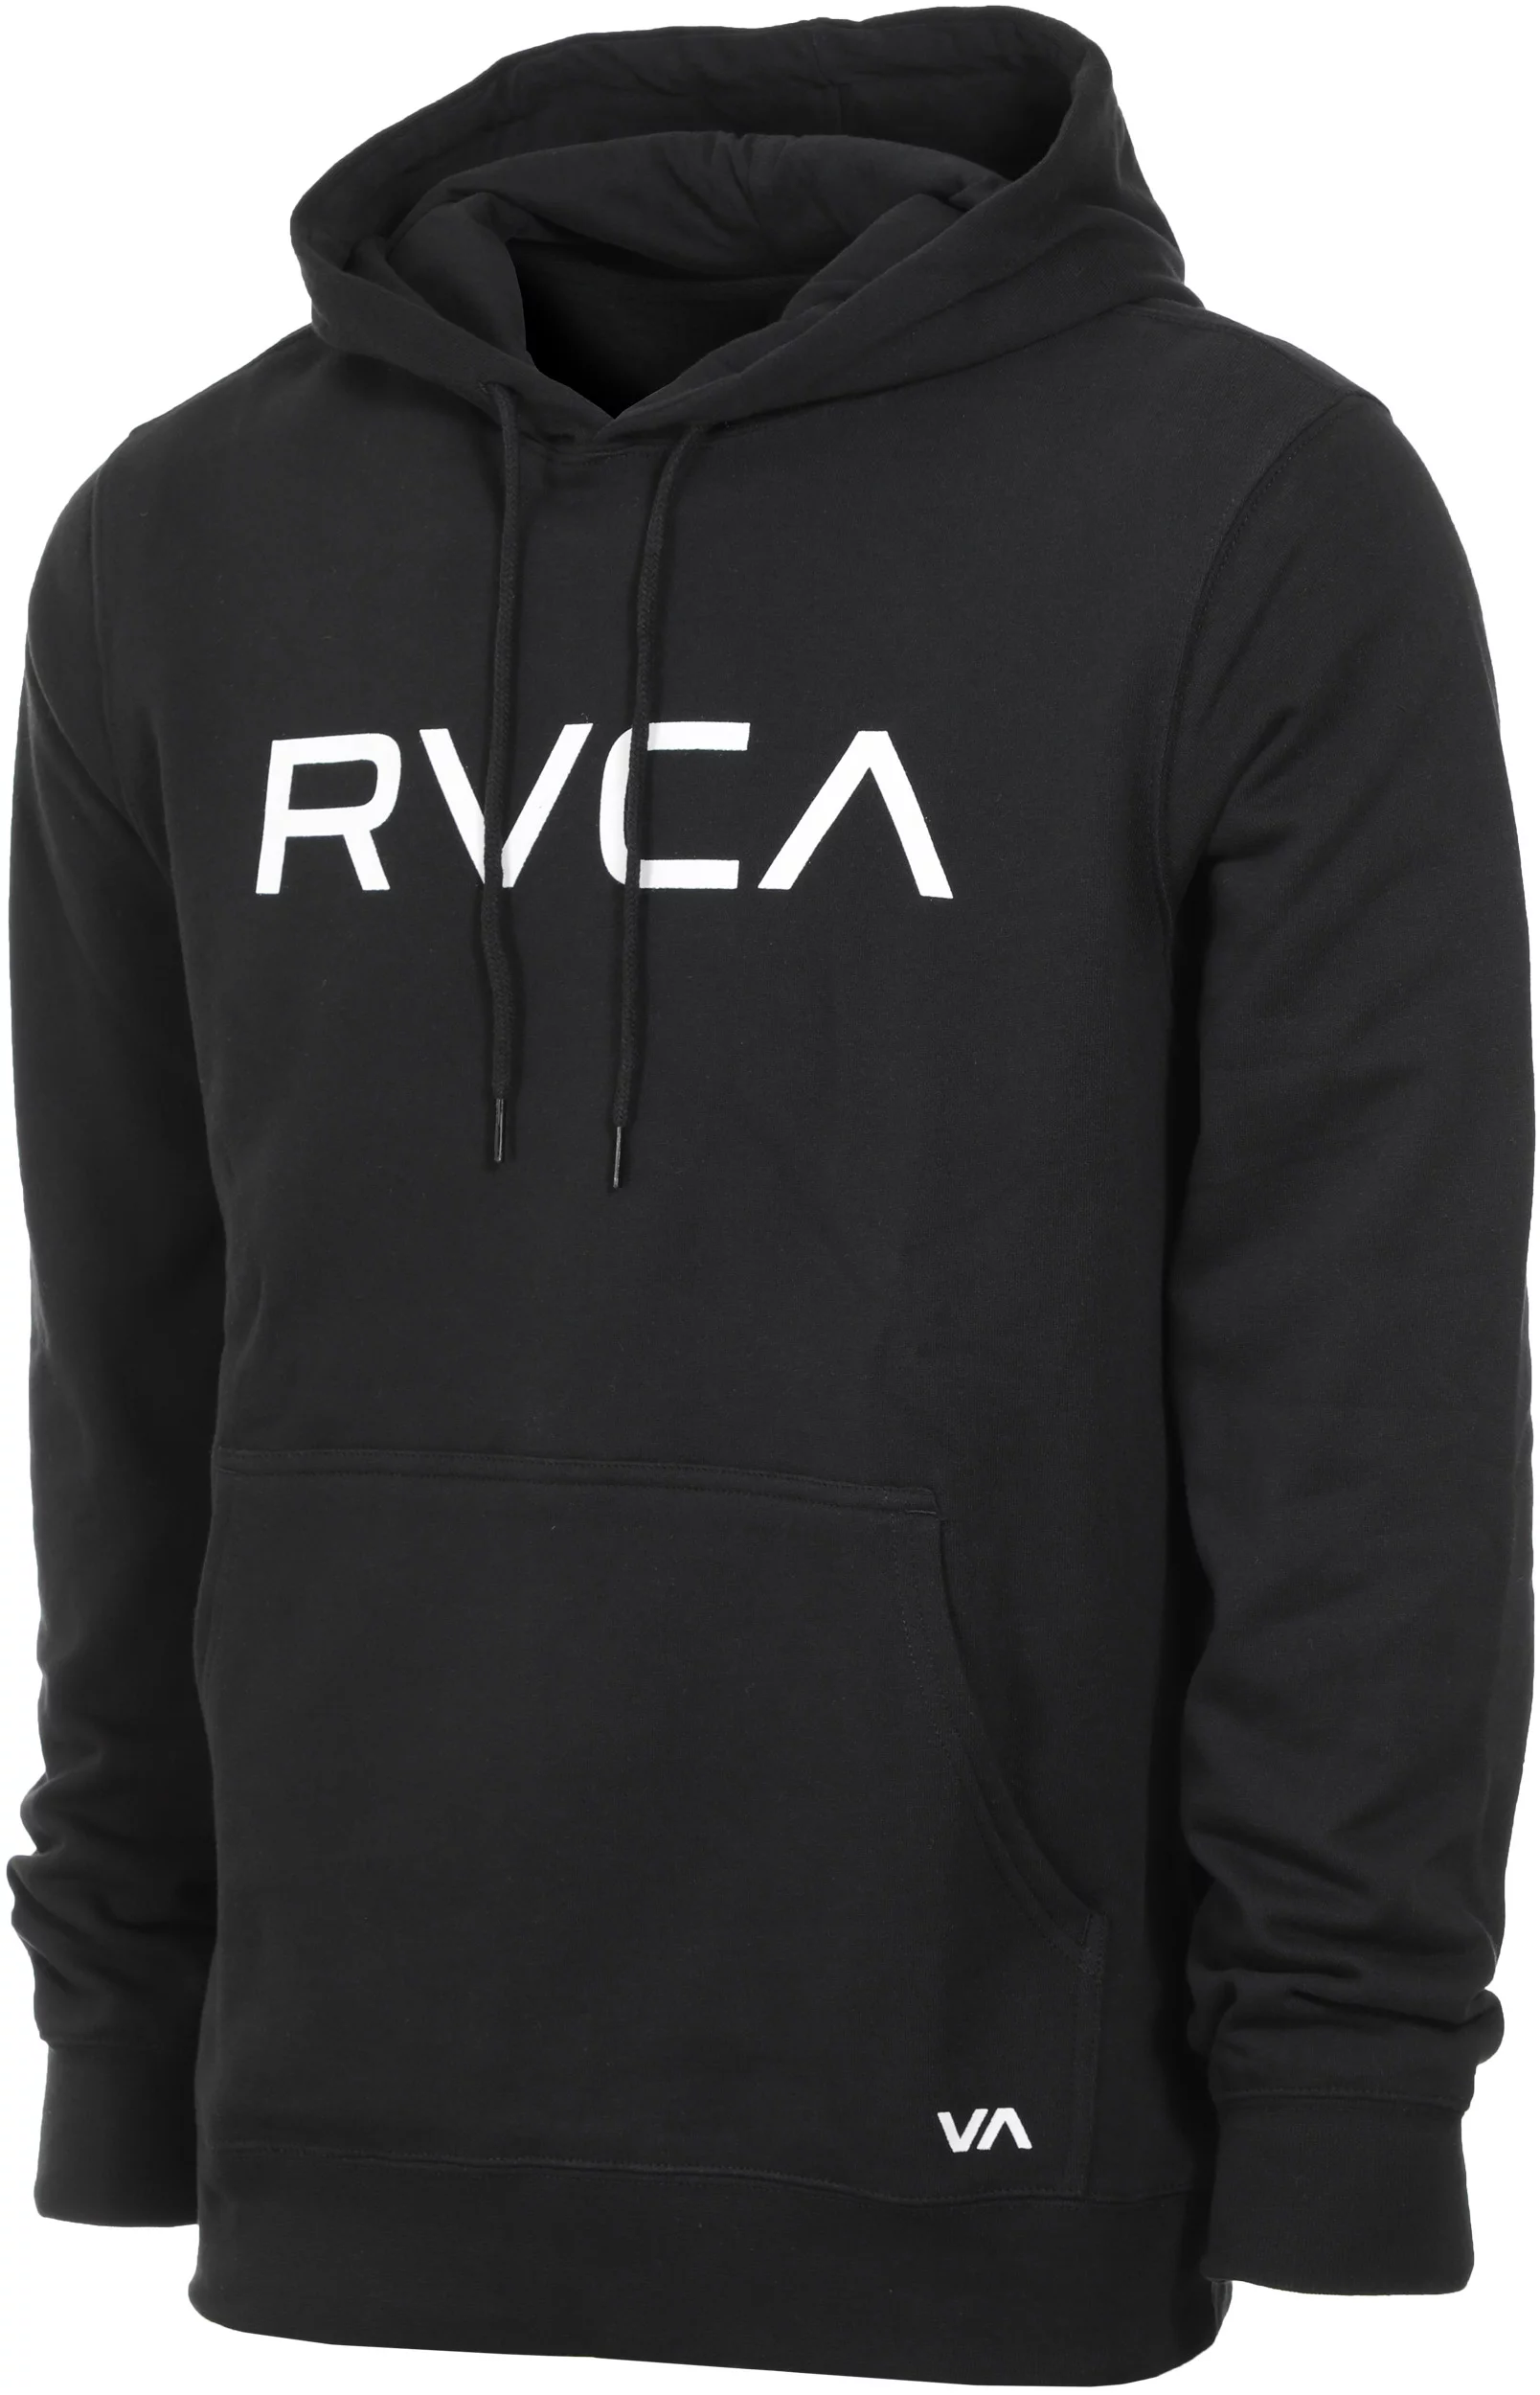 https://www.tactics.com/a/an7l/1b/rvca-big-rvca-hoodie-black.webp